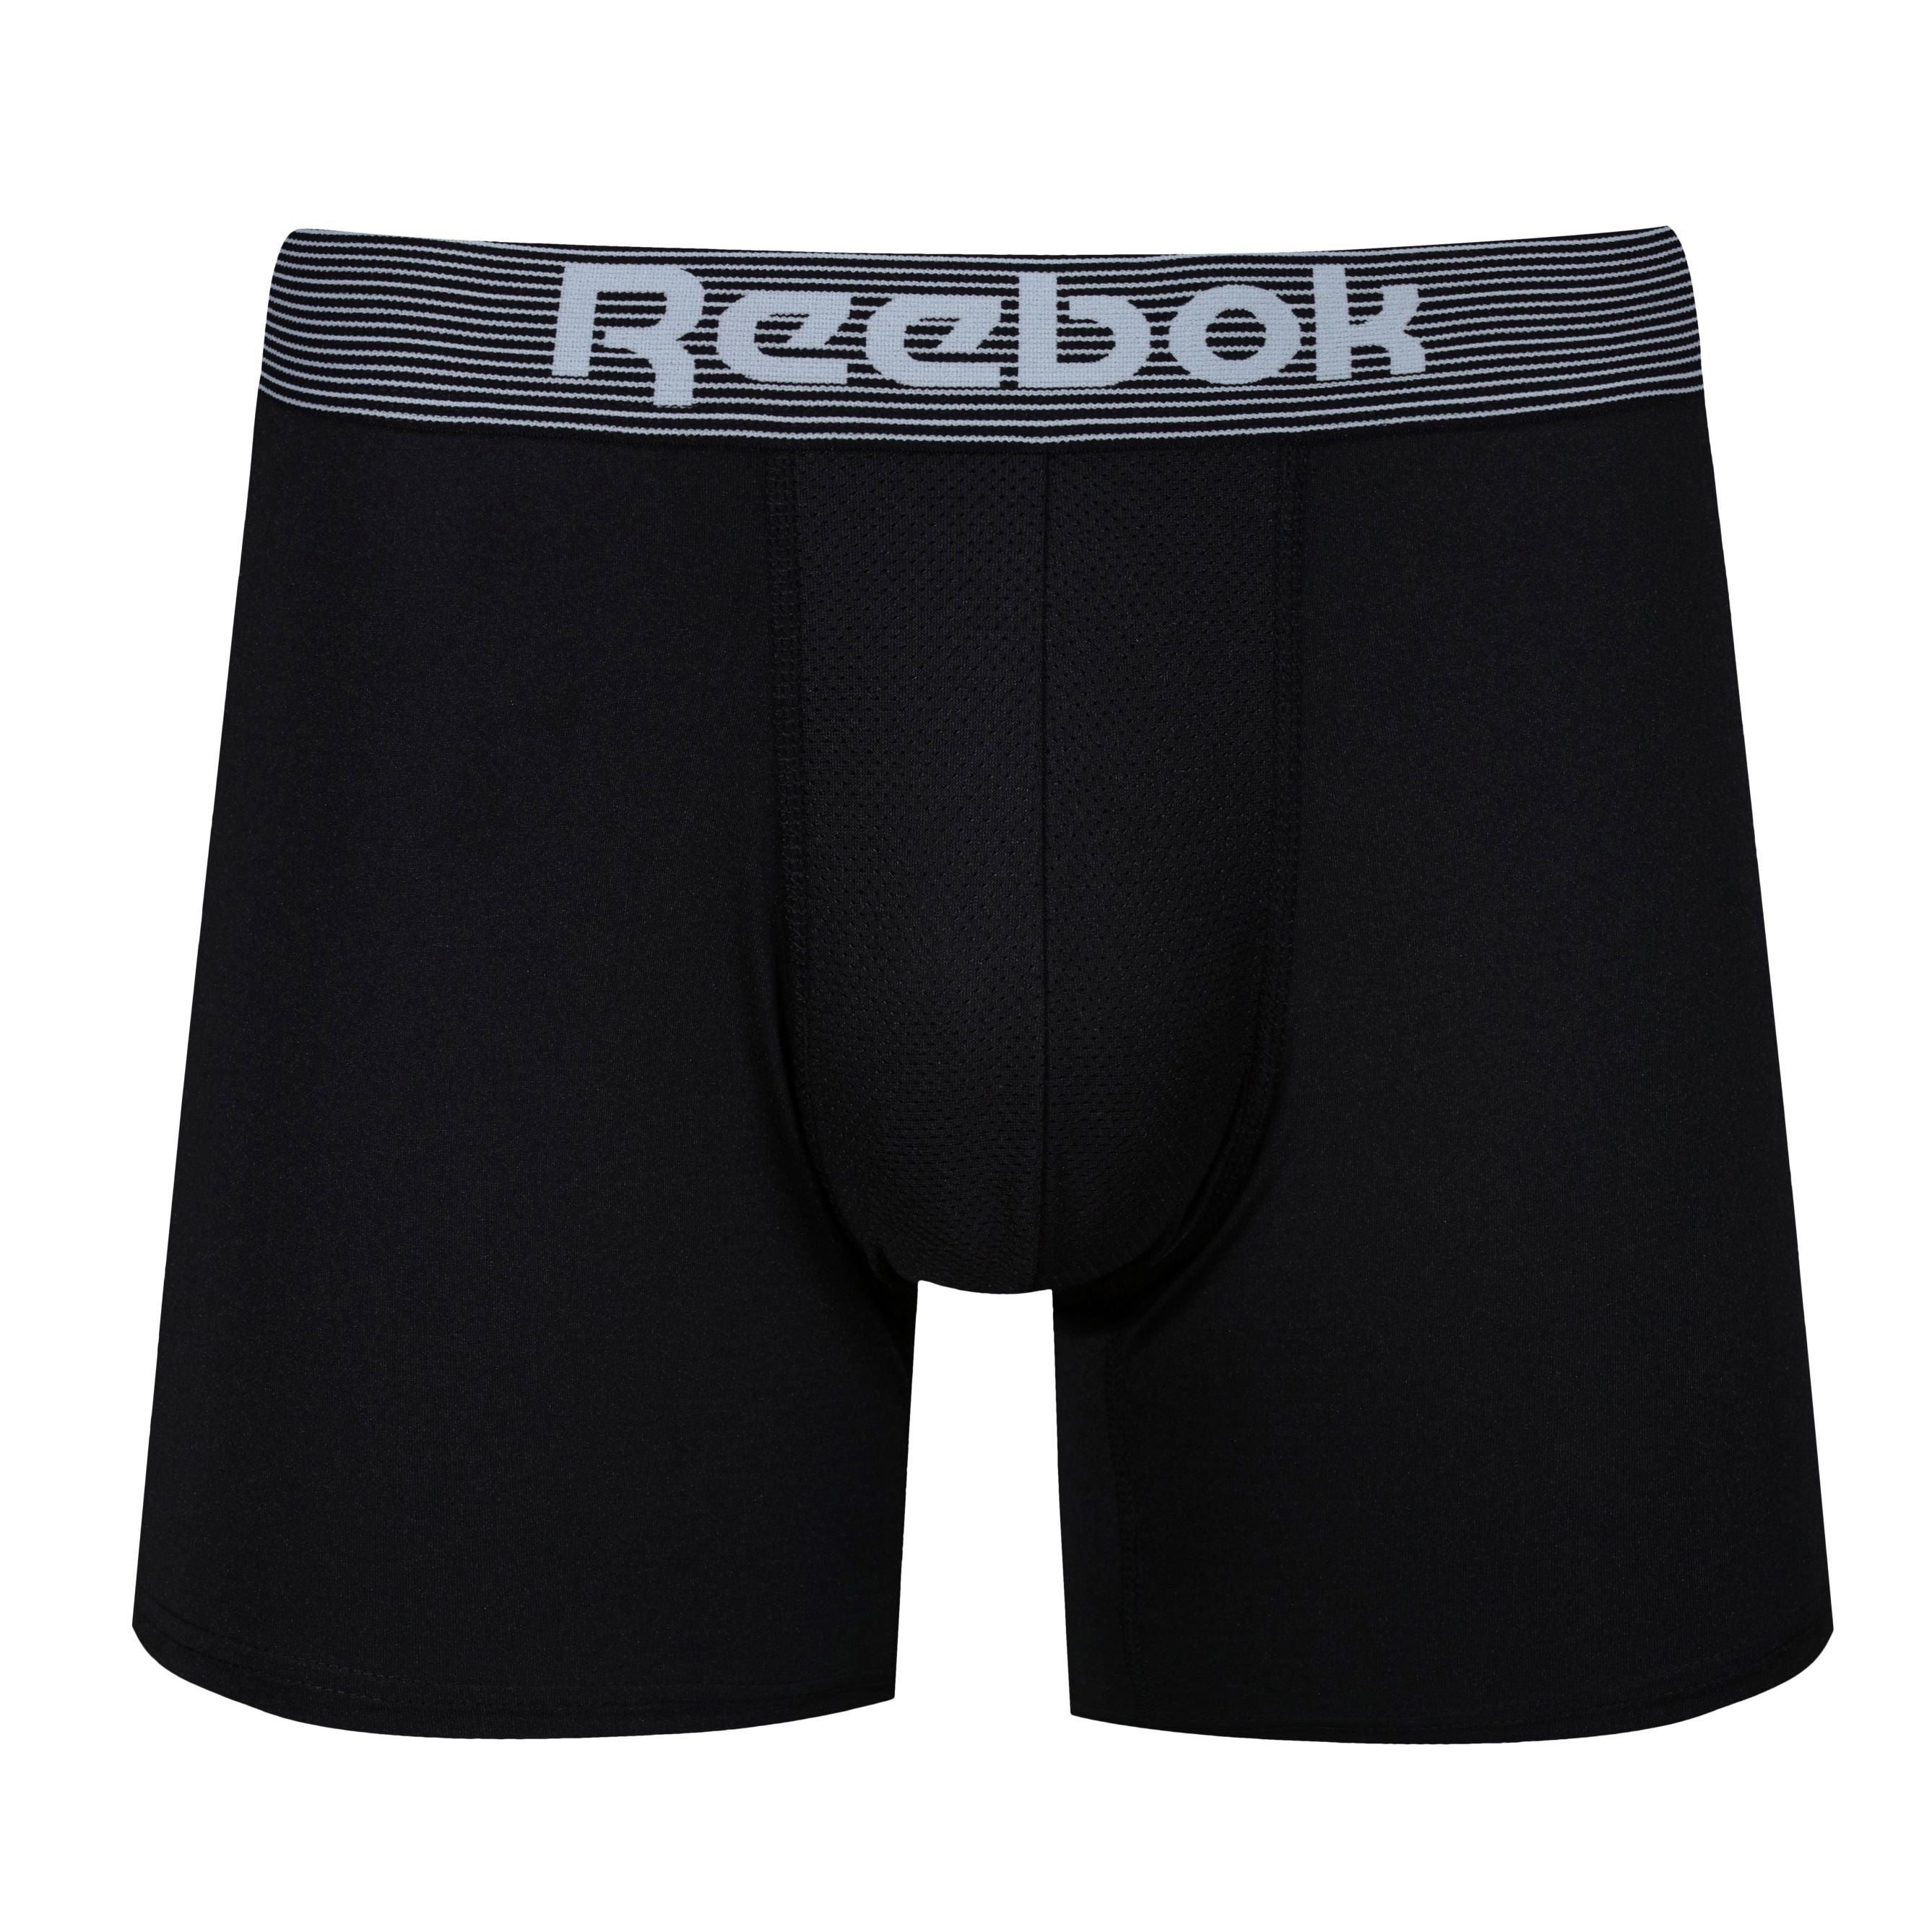 Reebok 3 Pack Black Boxers